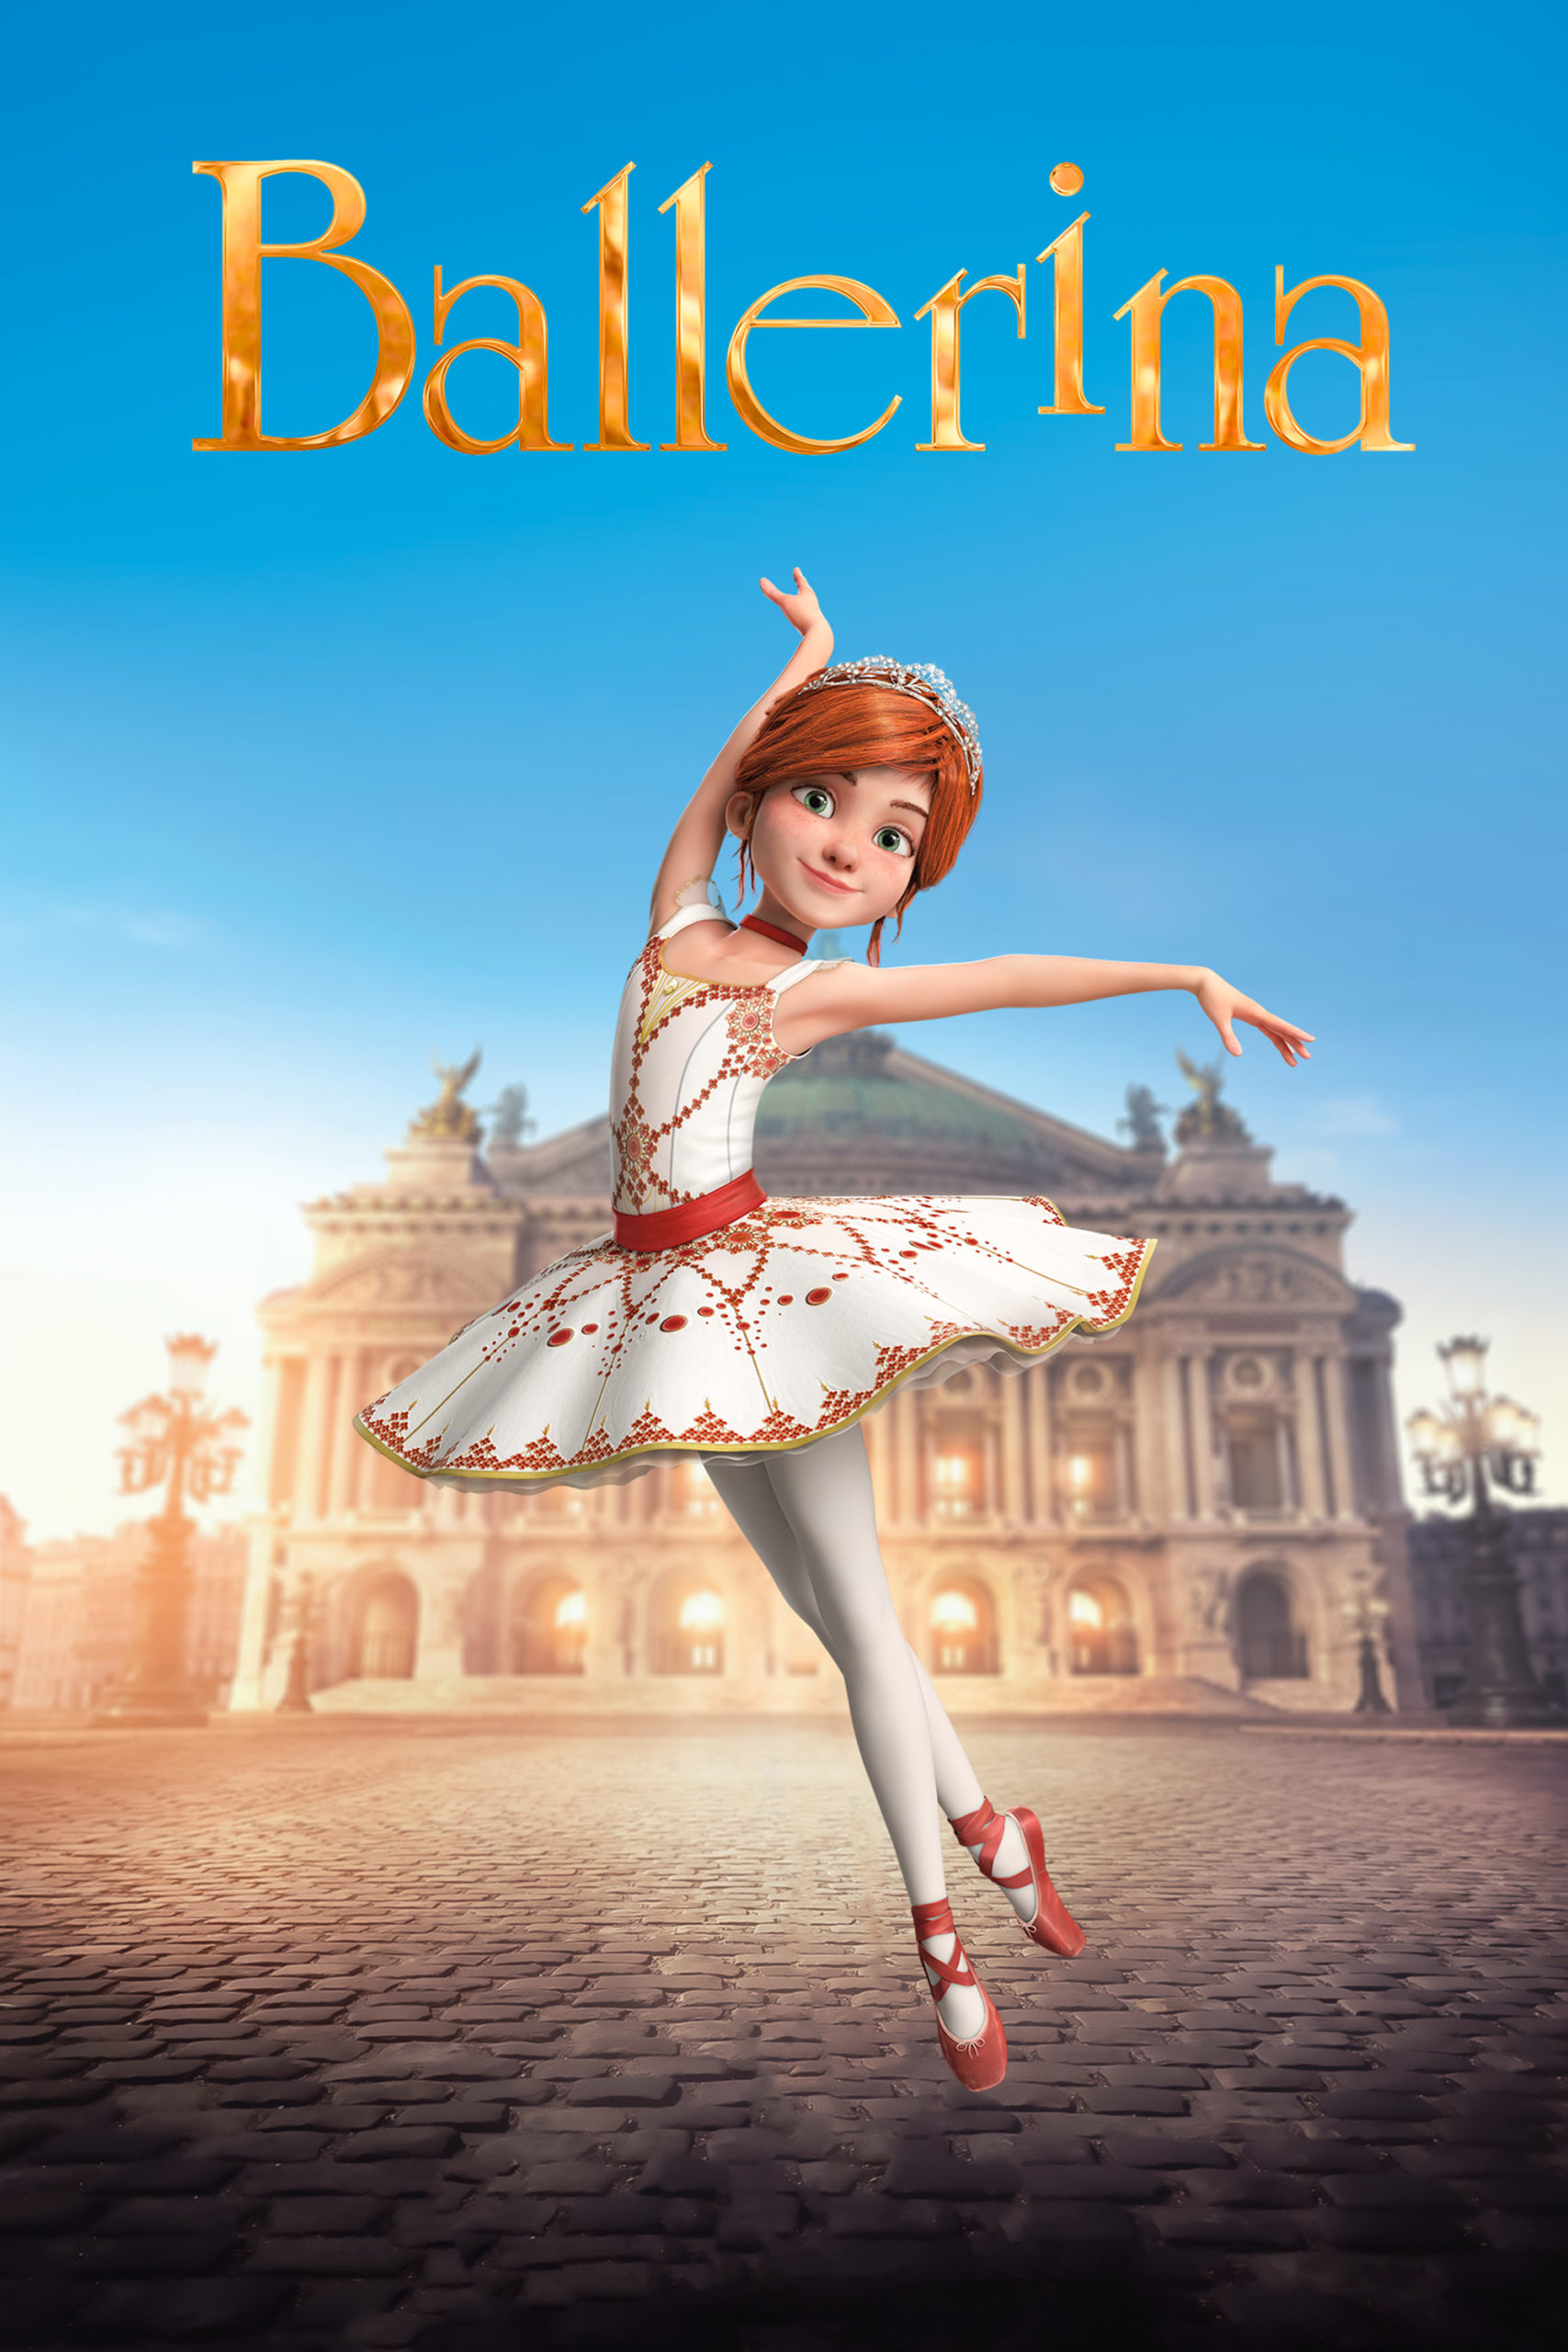 affiche du film Ballerina